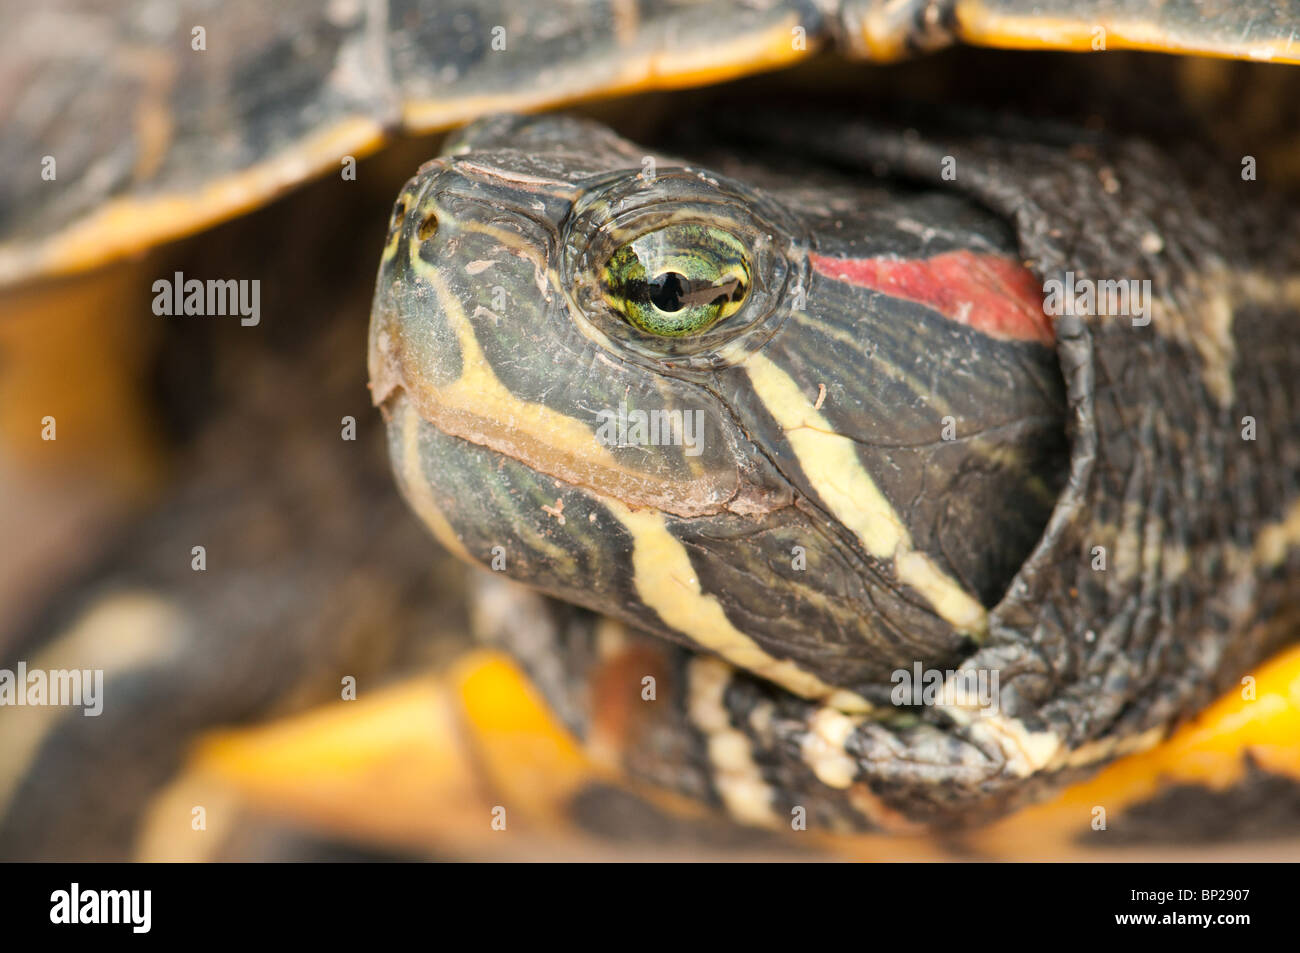 Portrait de la tortue de Floride, les espèces envahissantes dans le sud de l'Europe après la libération d'un grand nombre de personnes dans les zones humides naturelles Banque D'Images